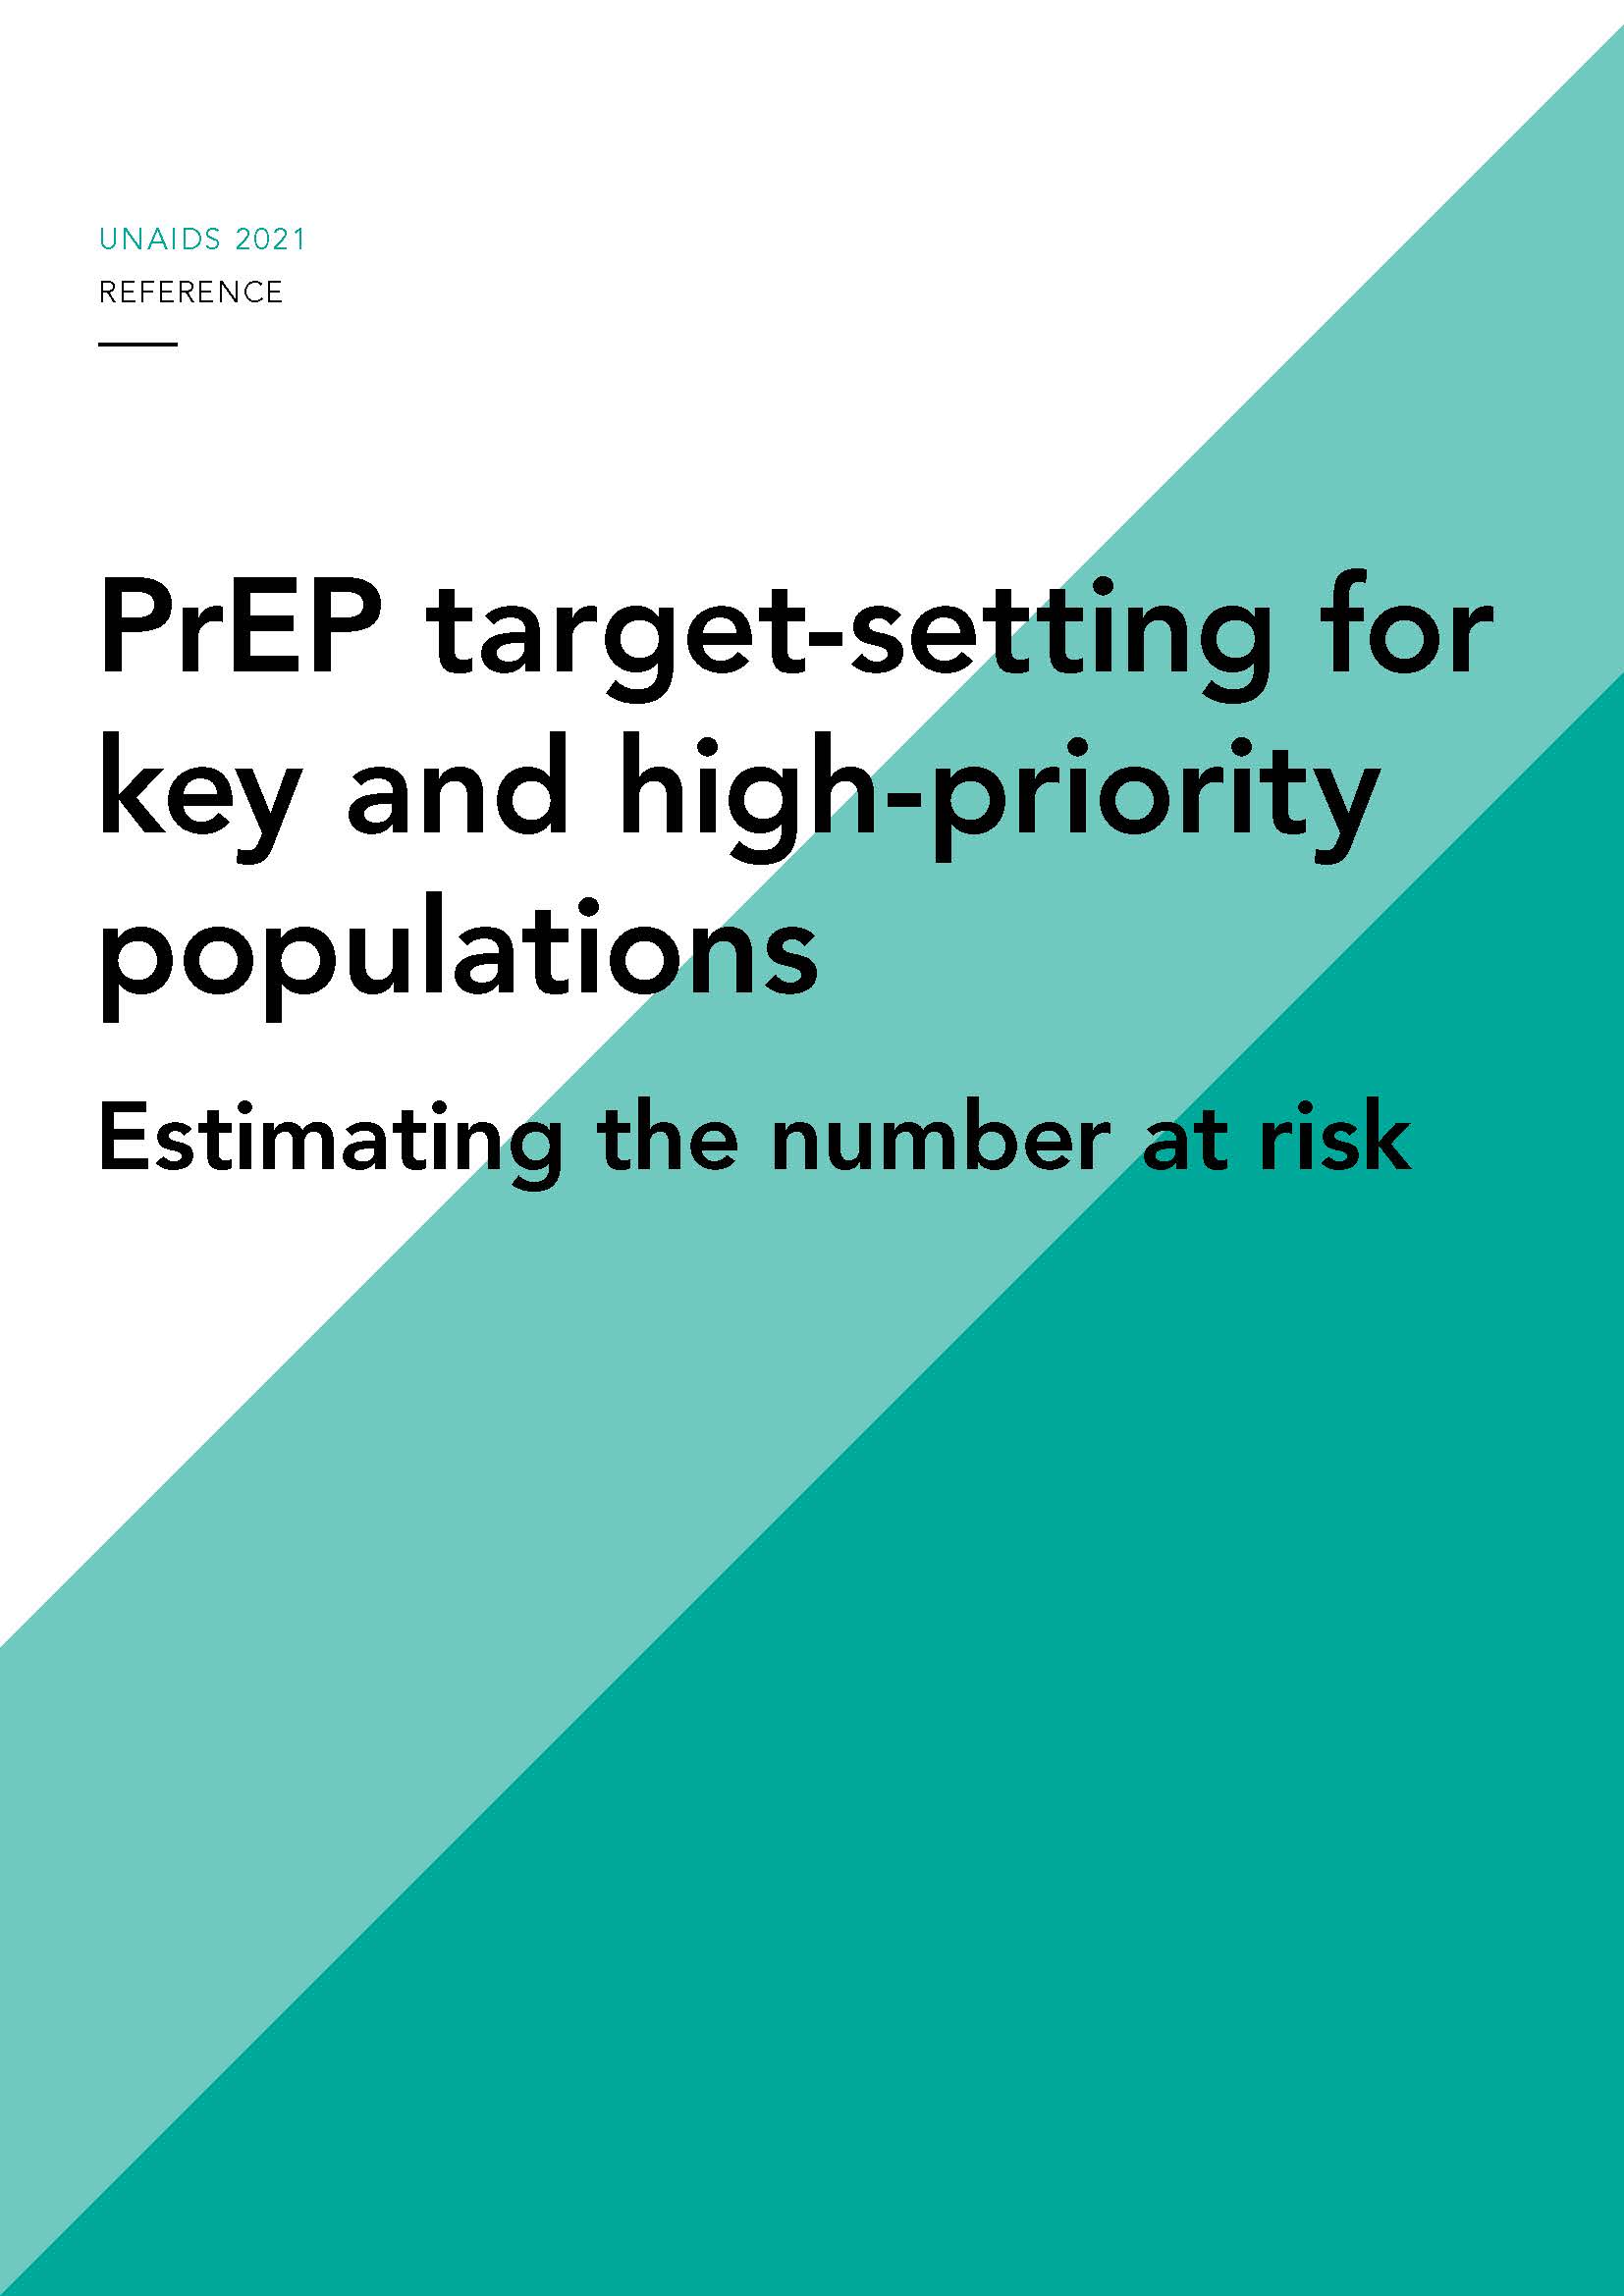 Fixation des objectifs de la PrEP : estimation du nombre de personnes à risque